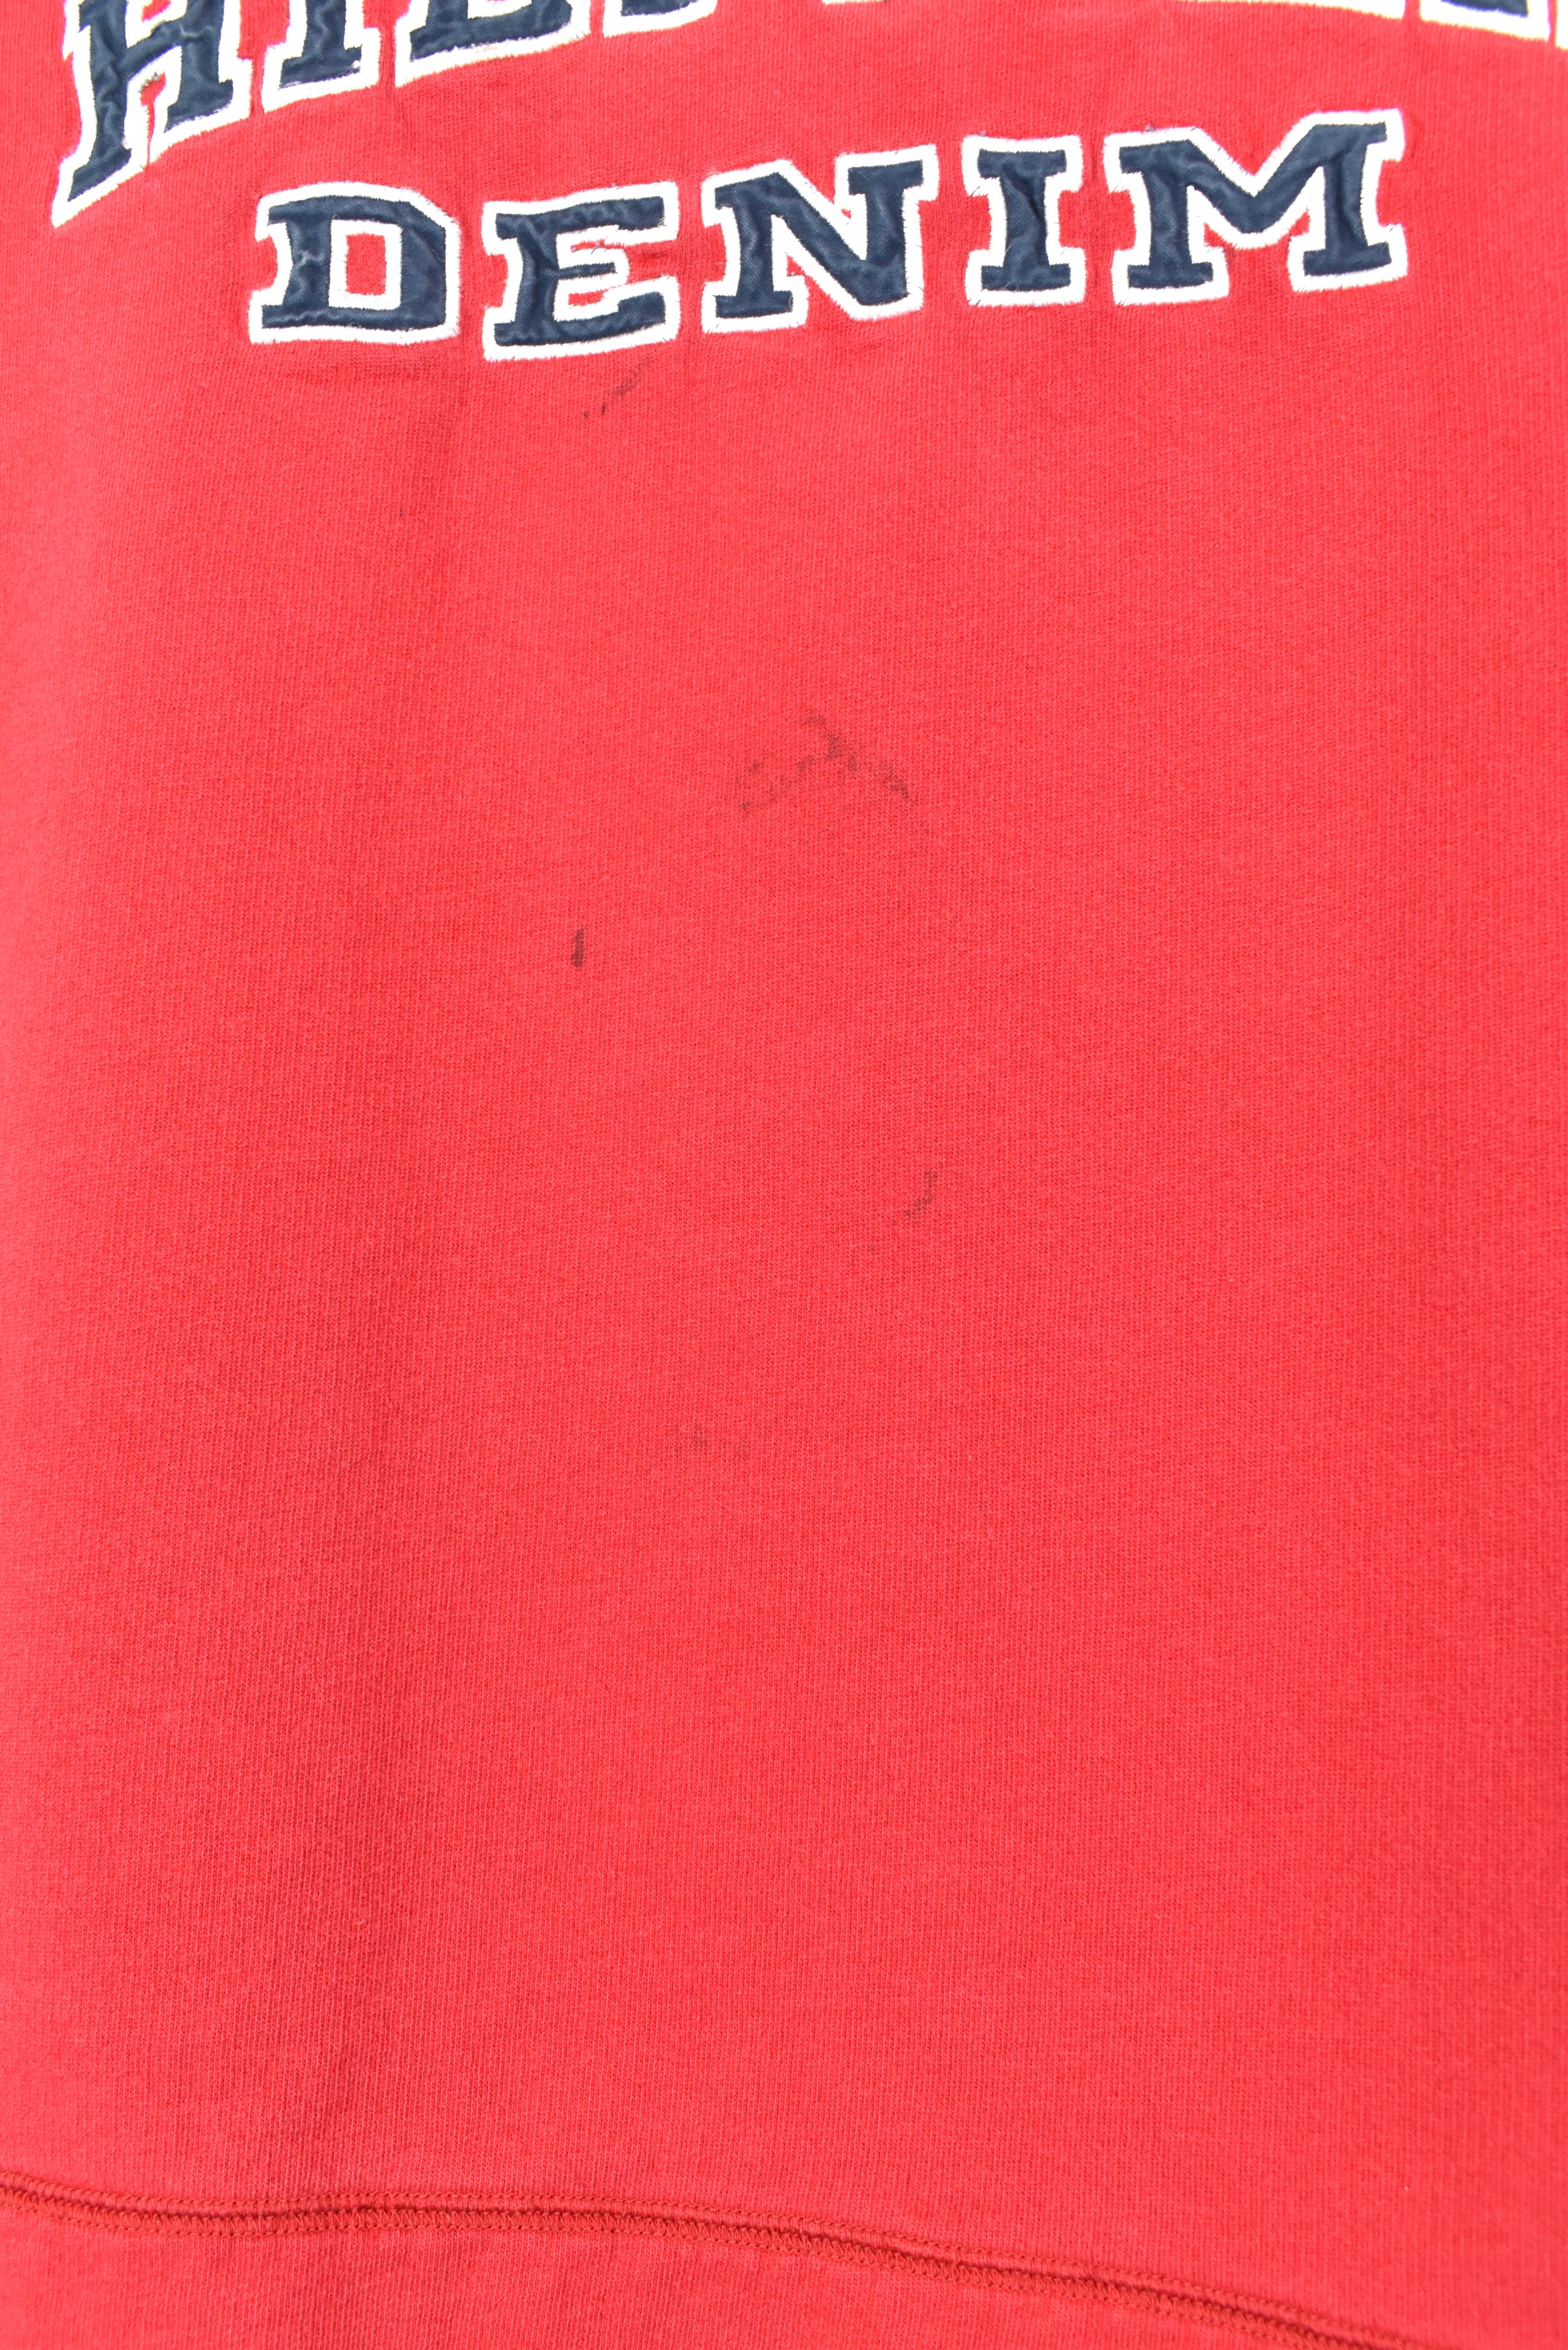 Vintage Tommy Hilfiger sweatshirt, red embroidered crewneck - AU Large TOMMY HILFIGER